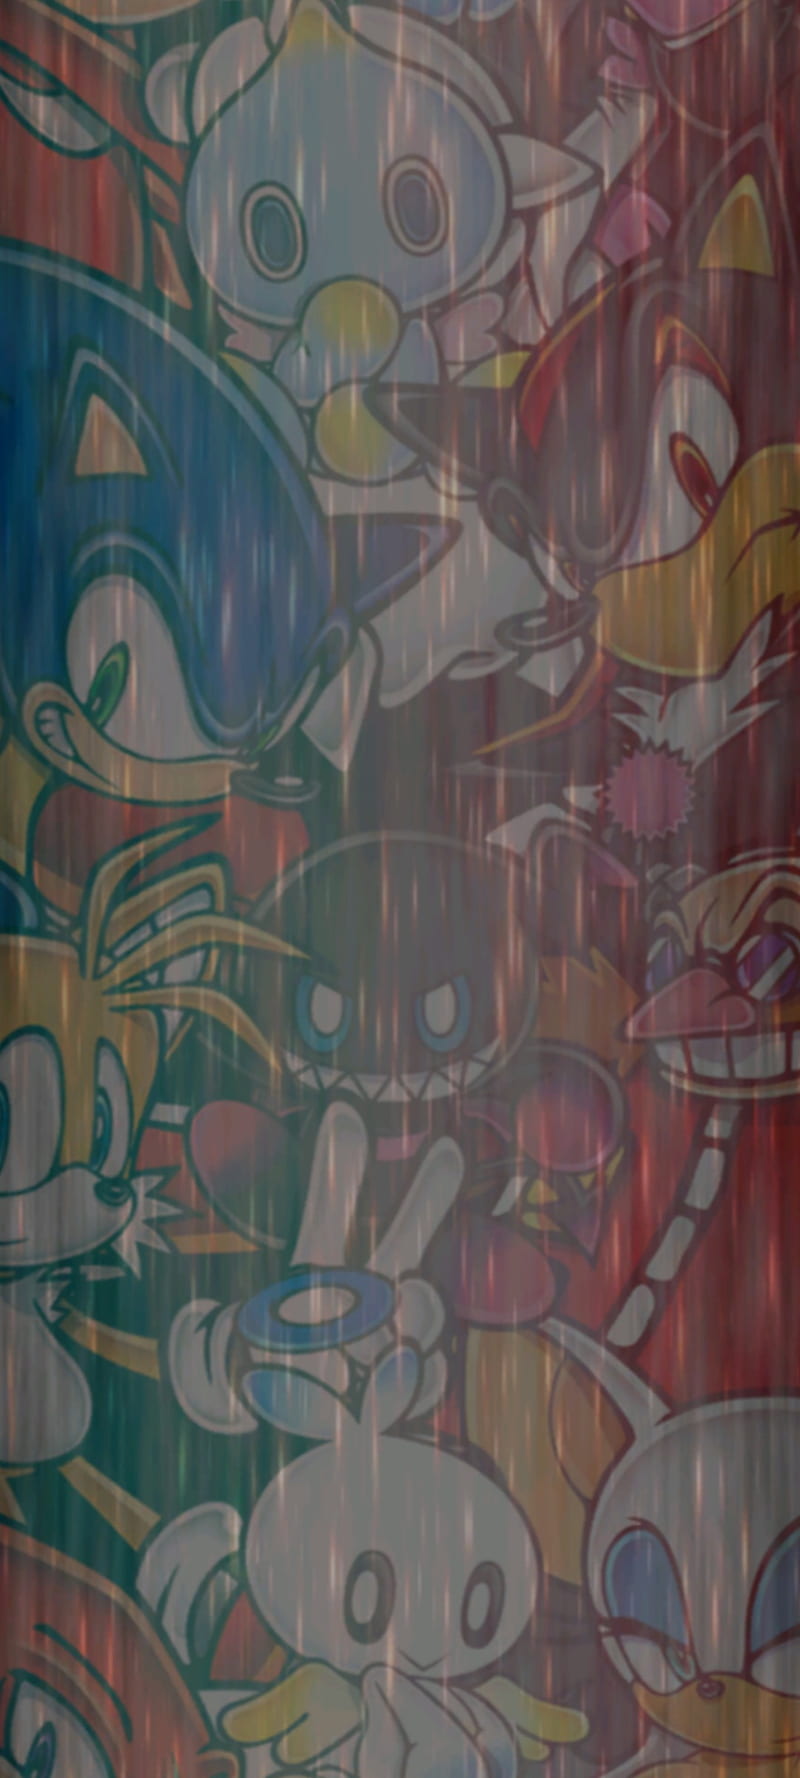 50 Sonic Adventure 2 Wallpaper  WallpaperSafari